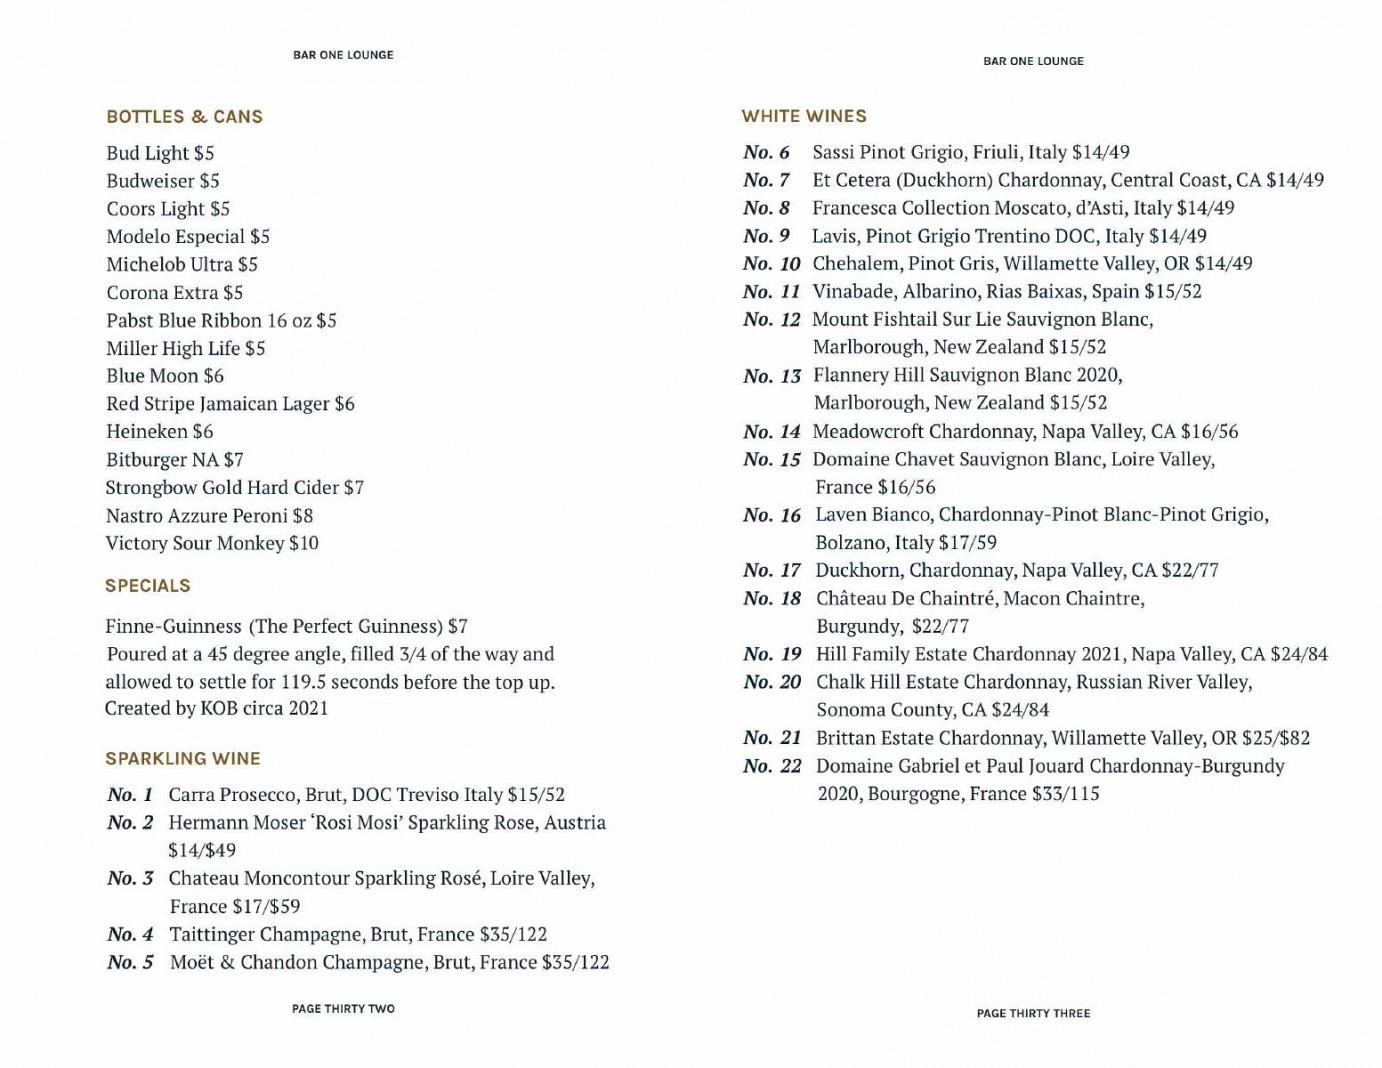 Cocktails menu page 19